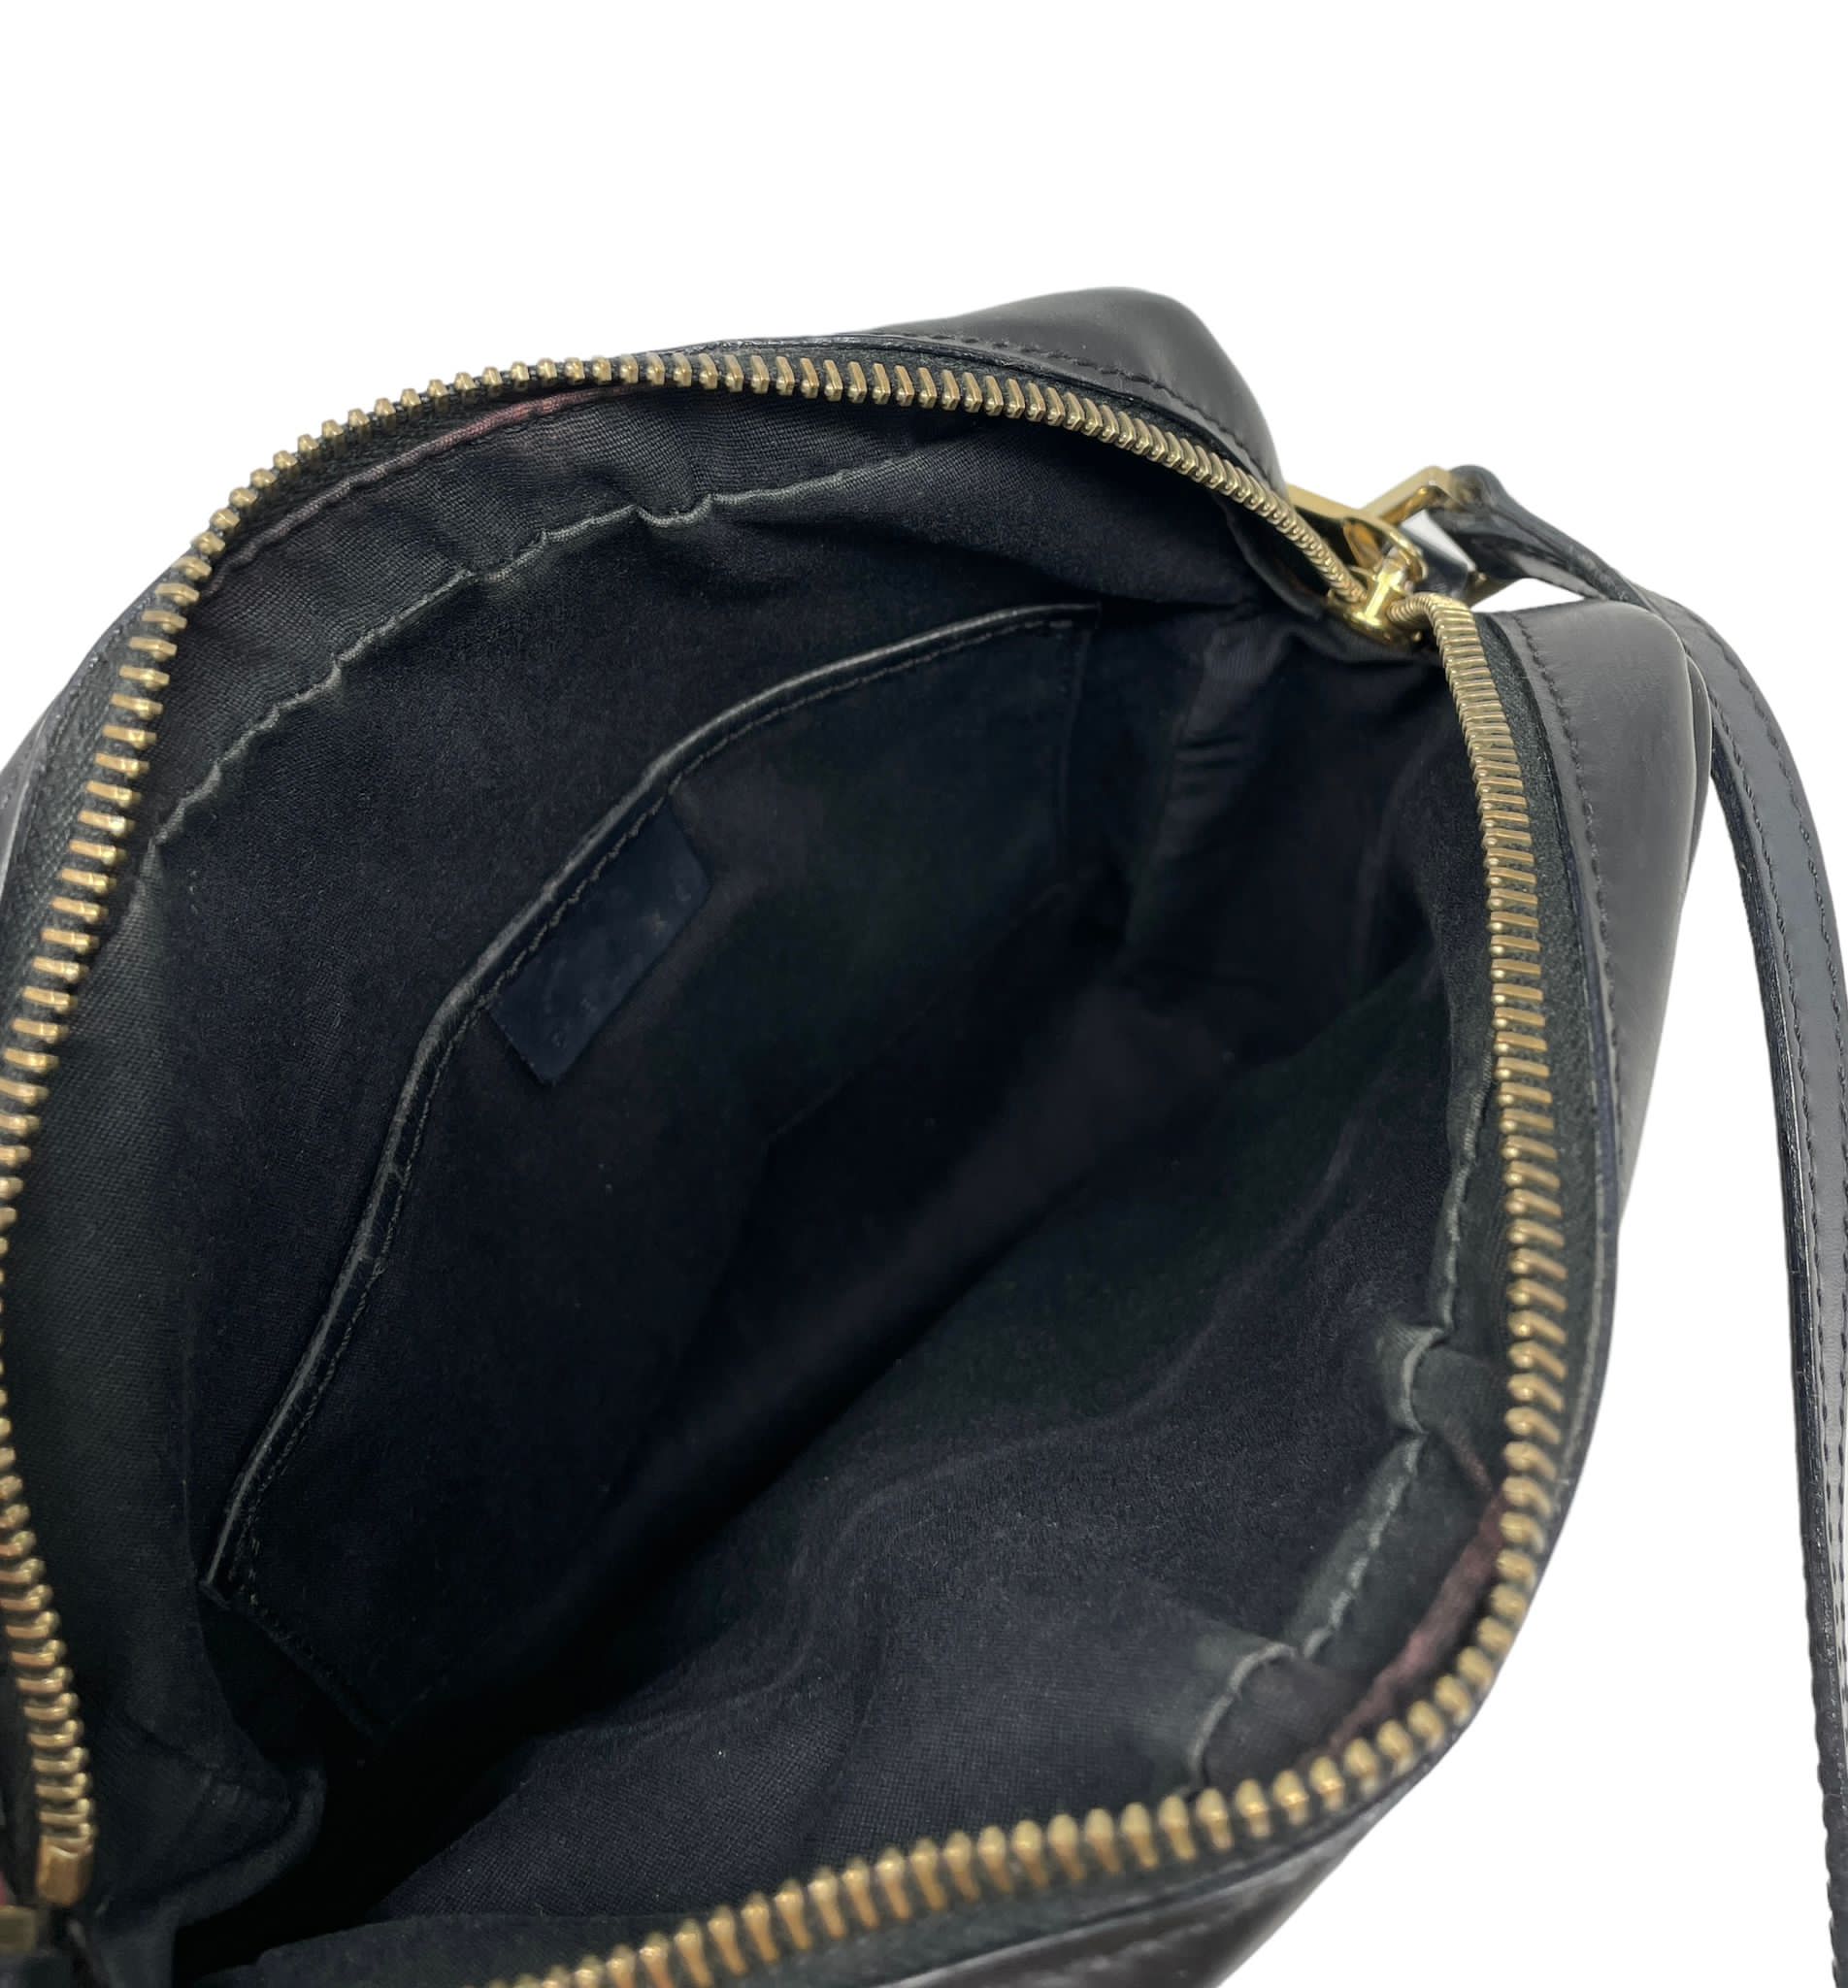 Celine Black Logo Shoulder Bag